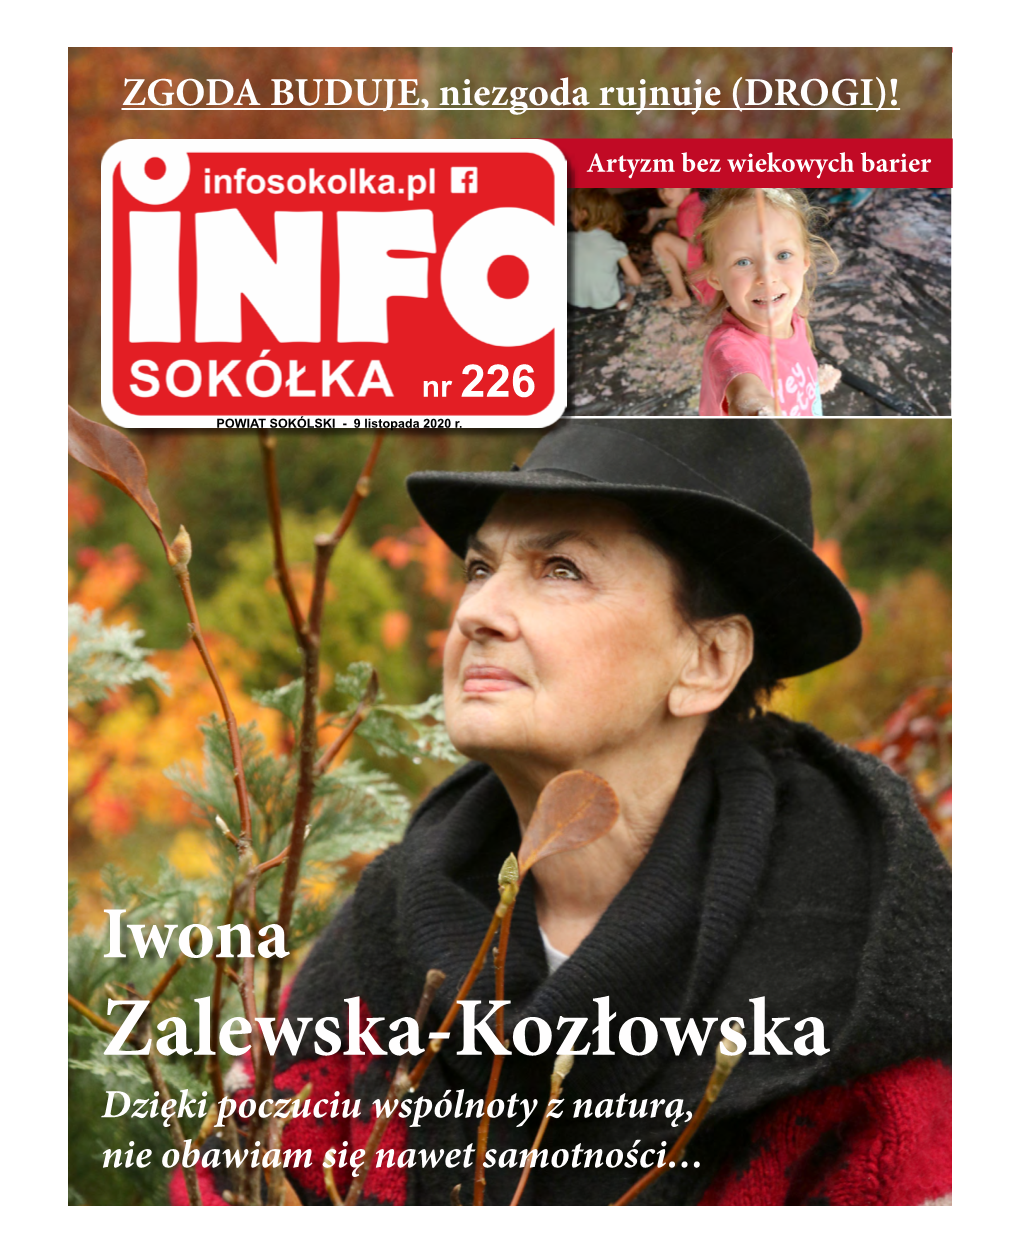 Zalewska-Kozłowska Dzięki Poczuciu Wspólnoty Z Naturą, Nie Obawiam Się Nawet Samotności… 9 Listopada 2020 R